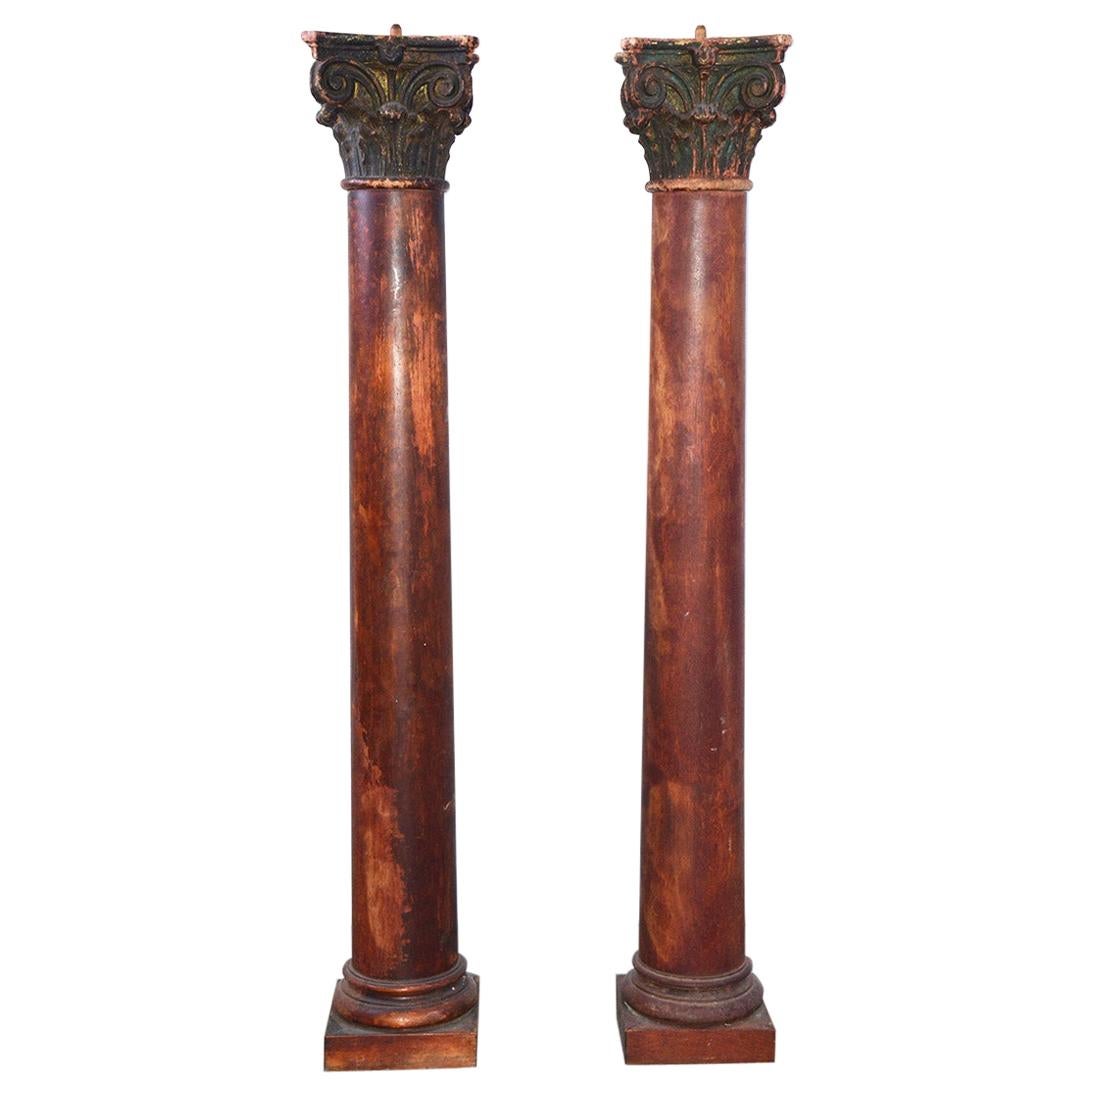 Paar bemalte antike Säulen mit korinthischen Kapitellen